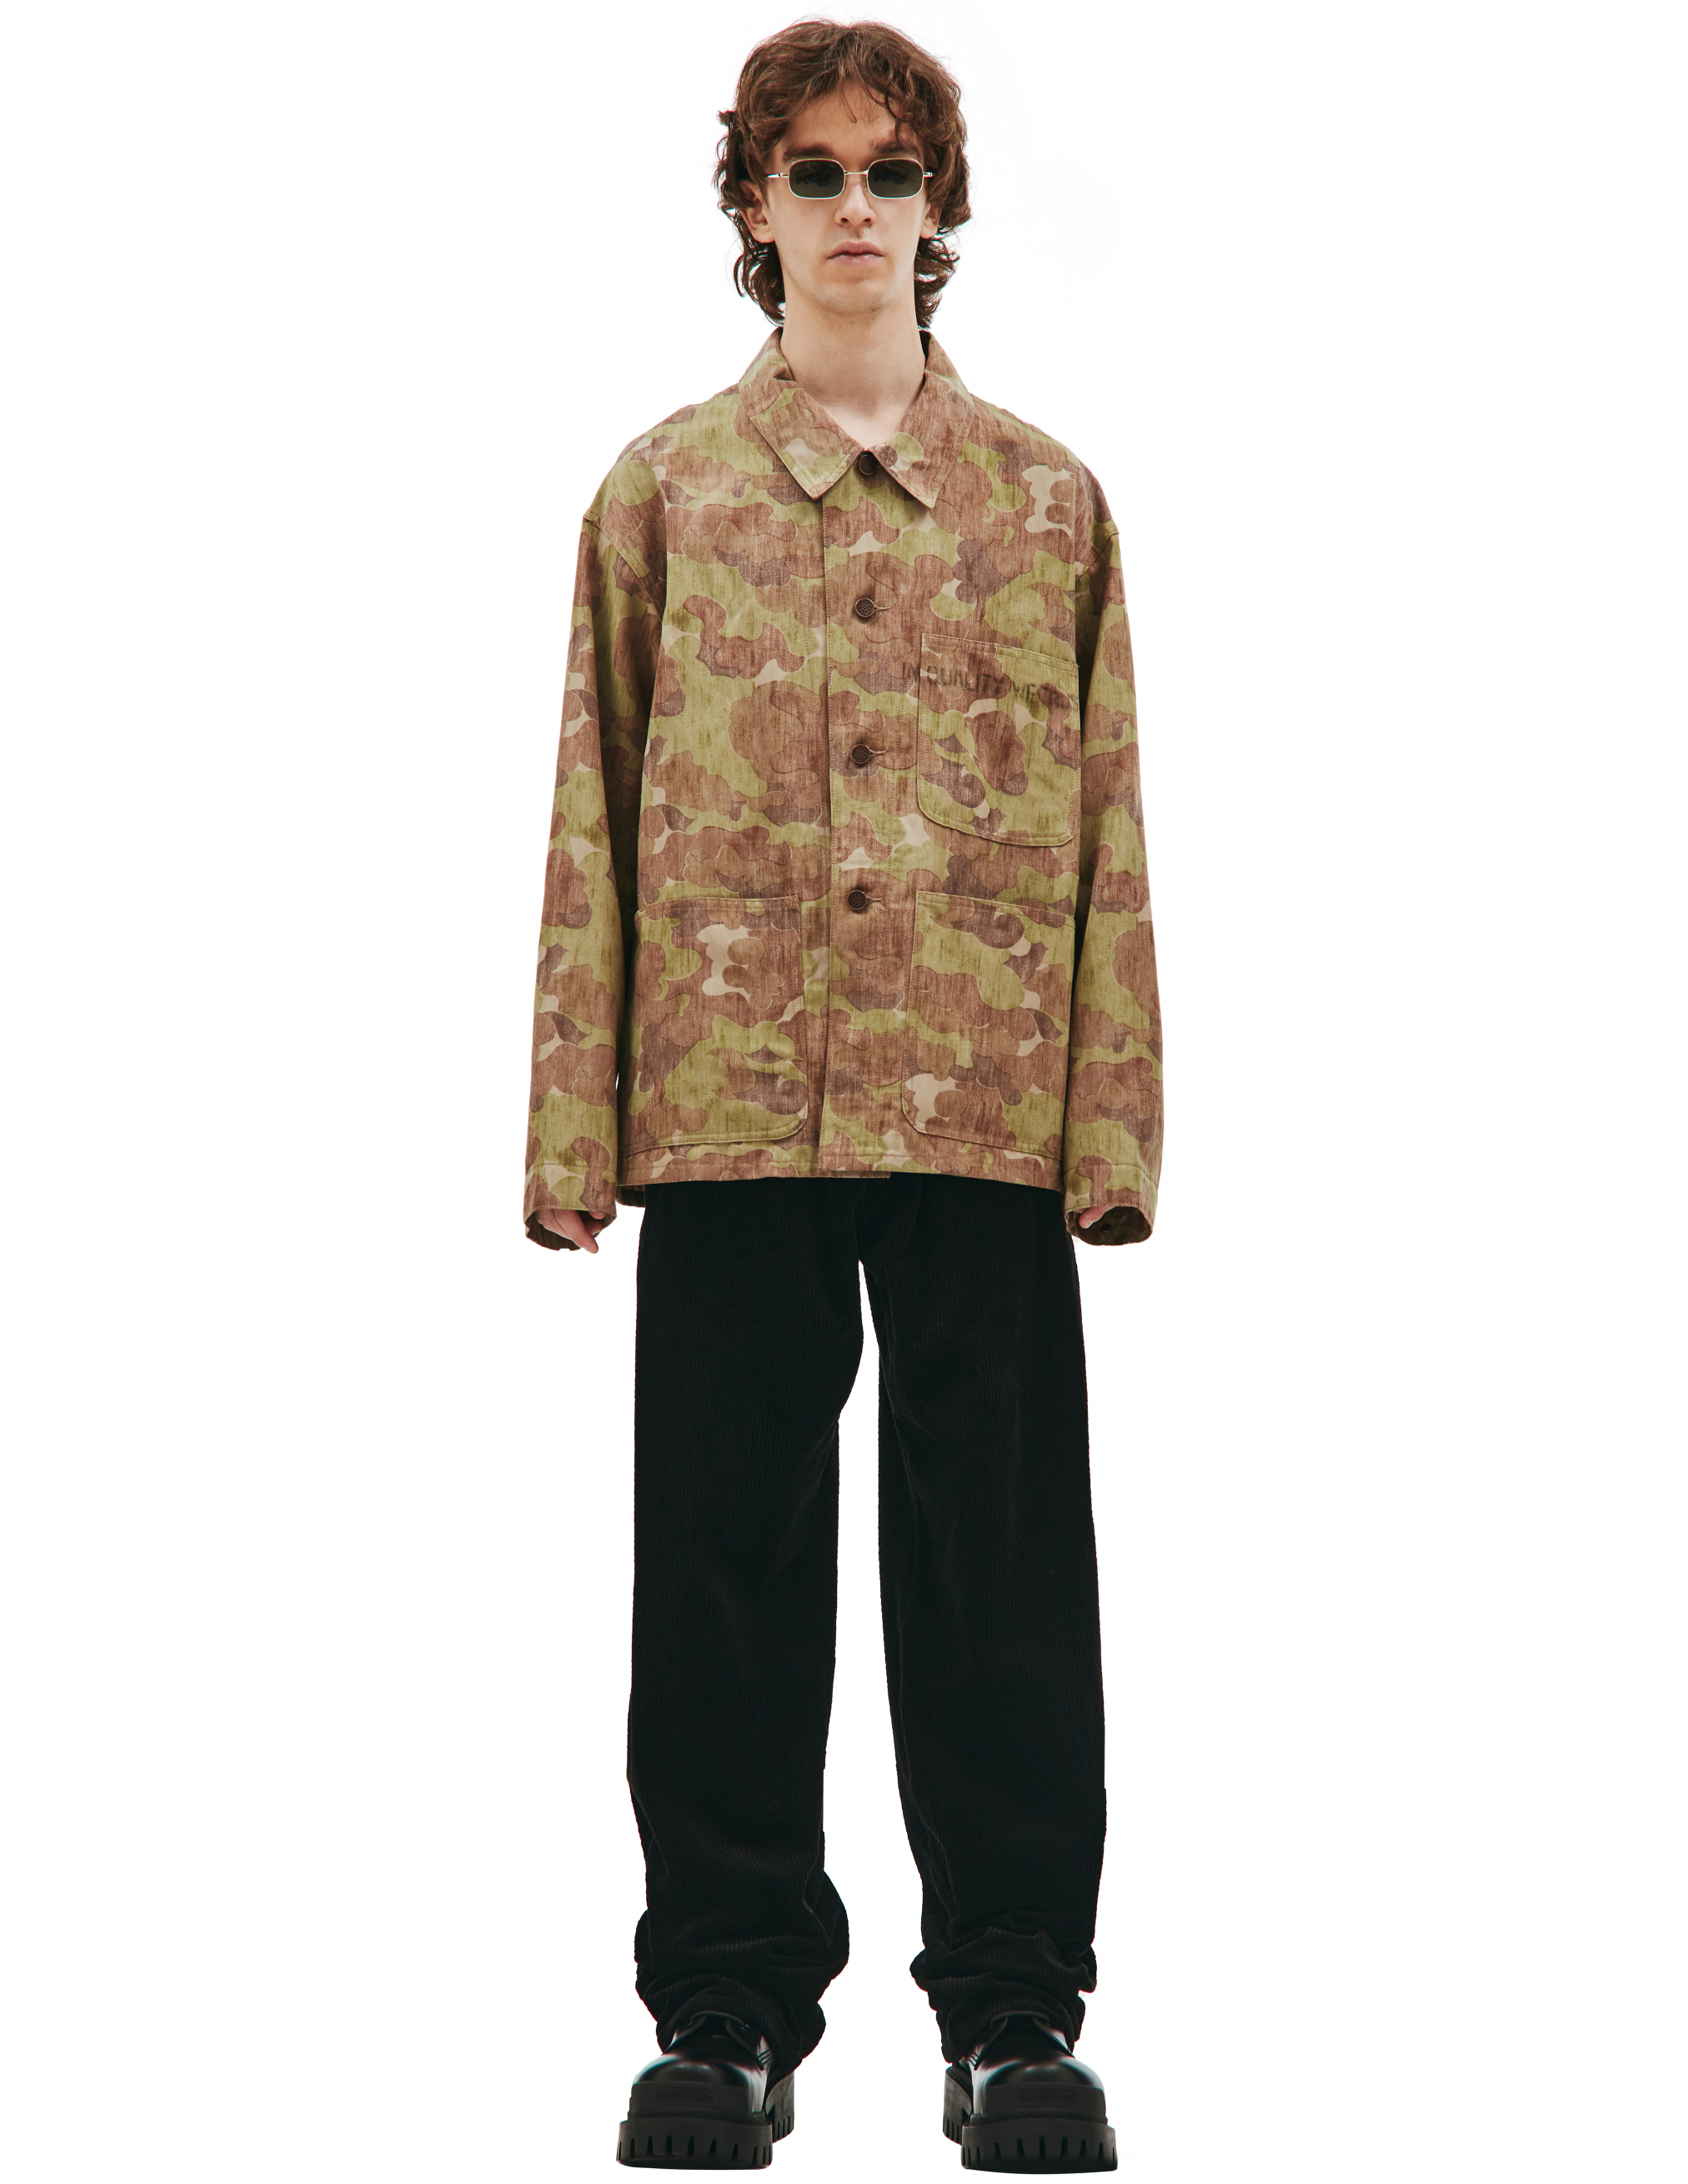 Куртка с камуфляжным принтом Visvim 0121205013018/camo, размер 5;4 0121205013018/camo - фото 1